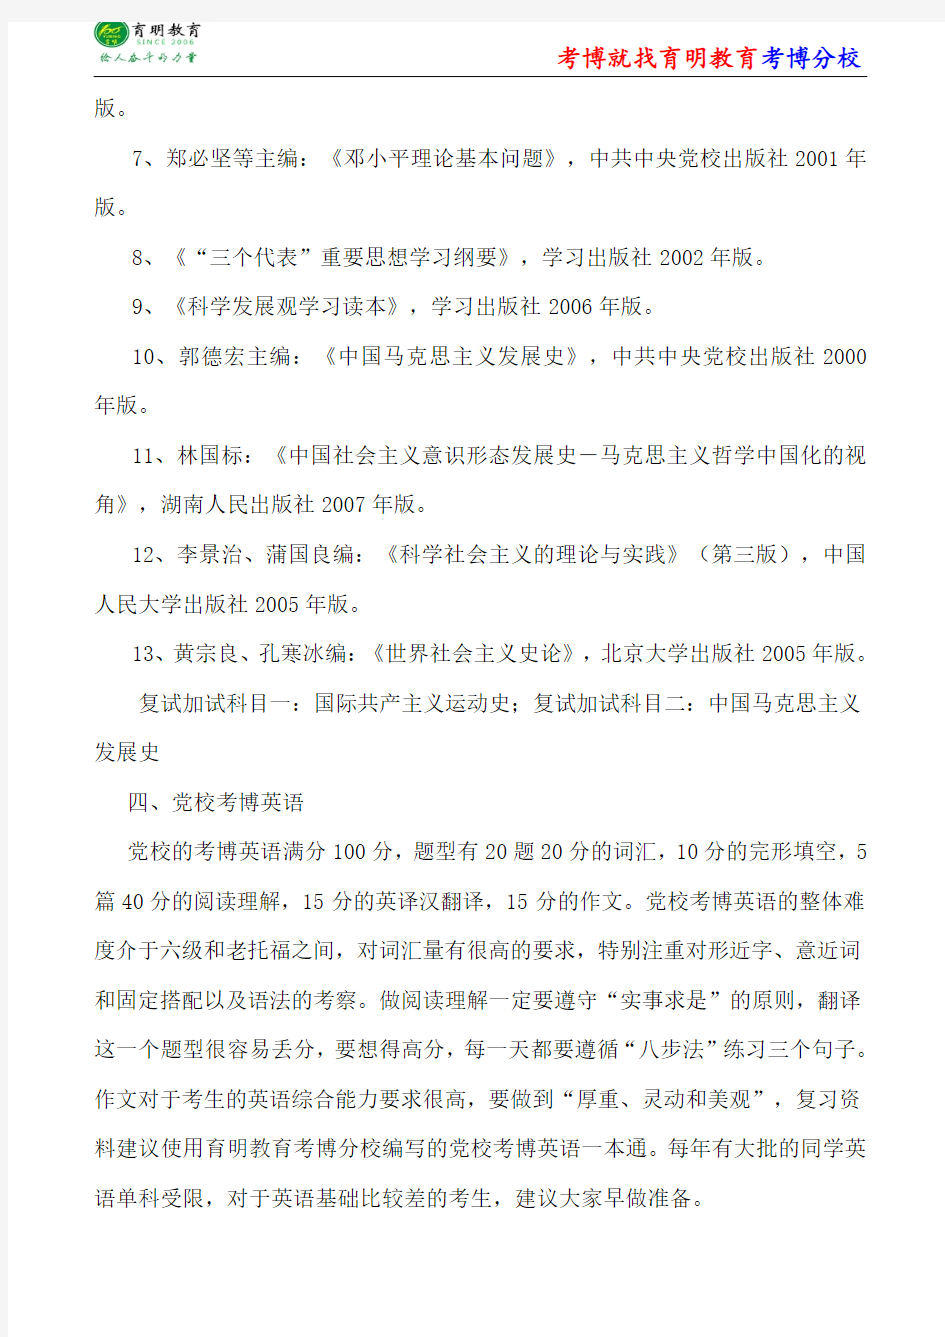 中共中央党校马克思主义中国化内部资料-考博试题答案-考博经验